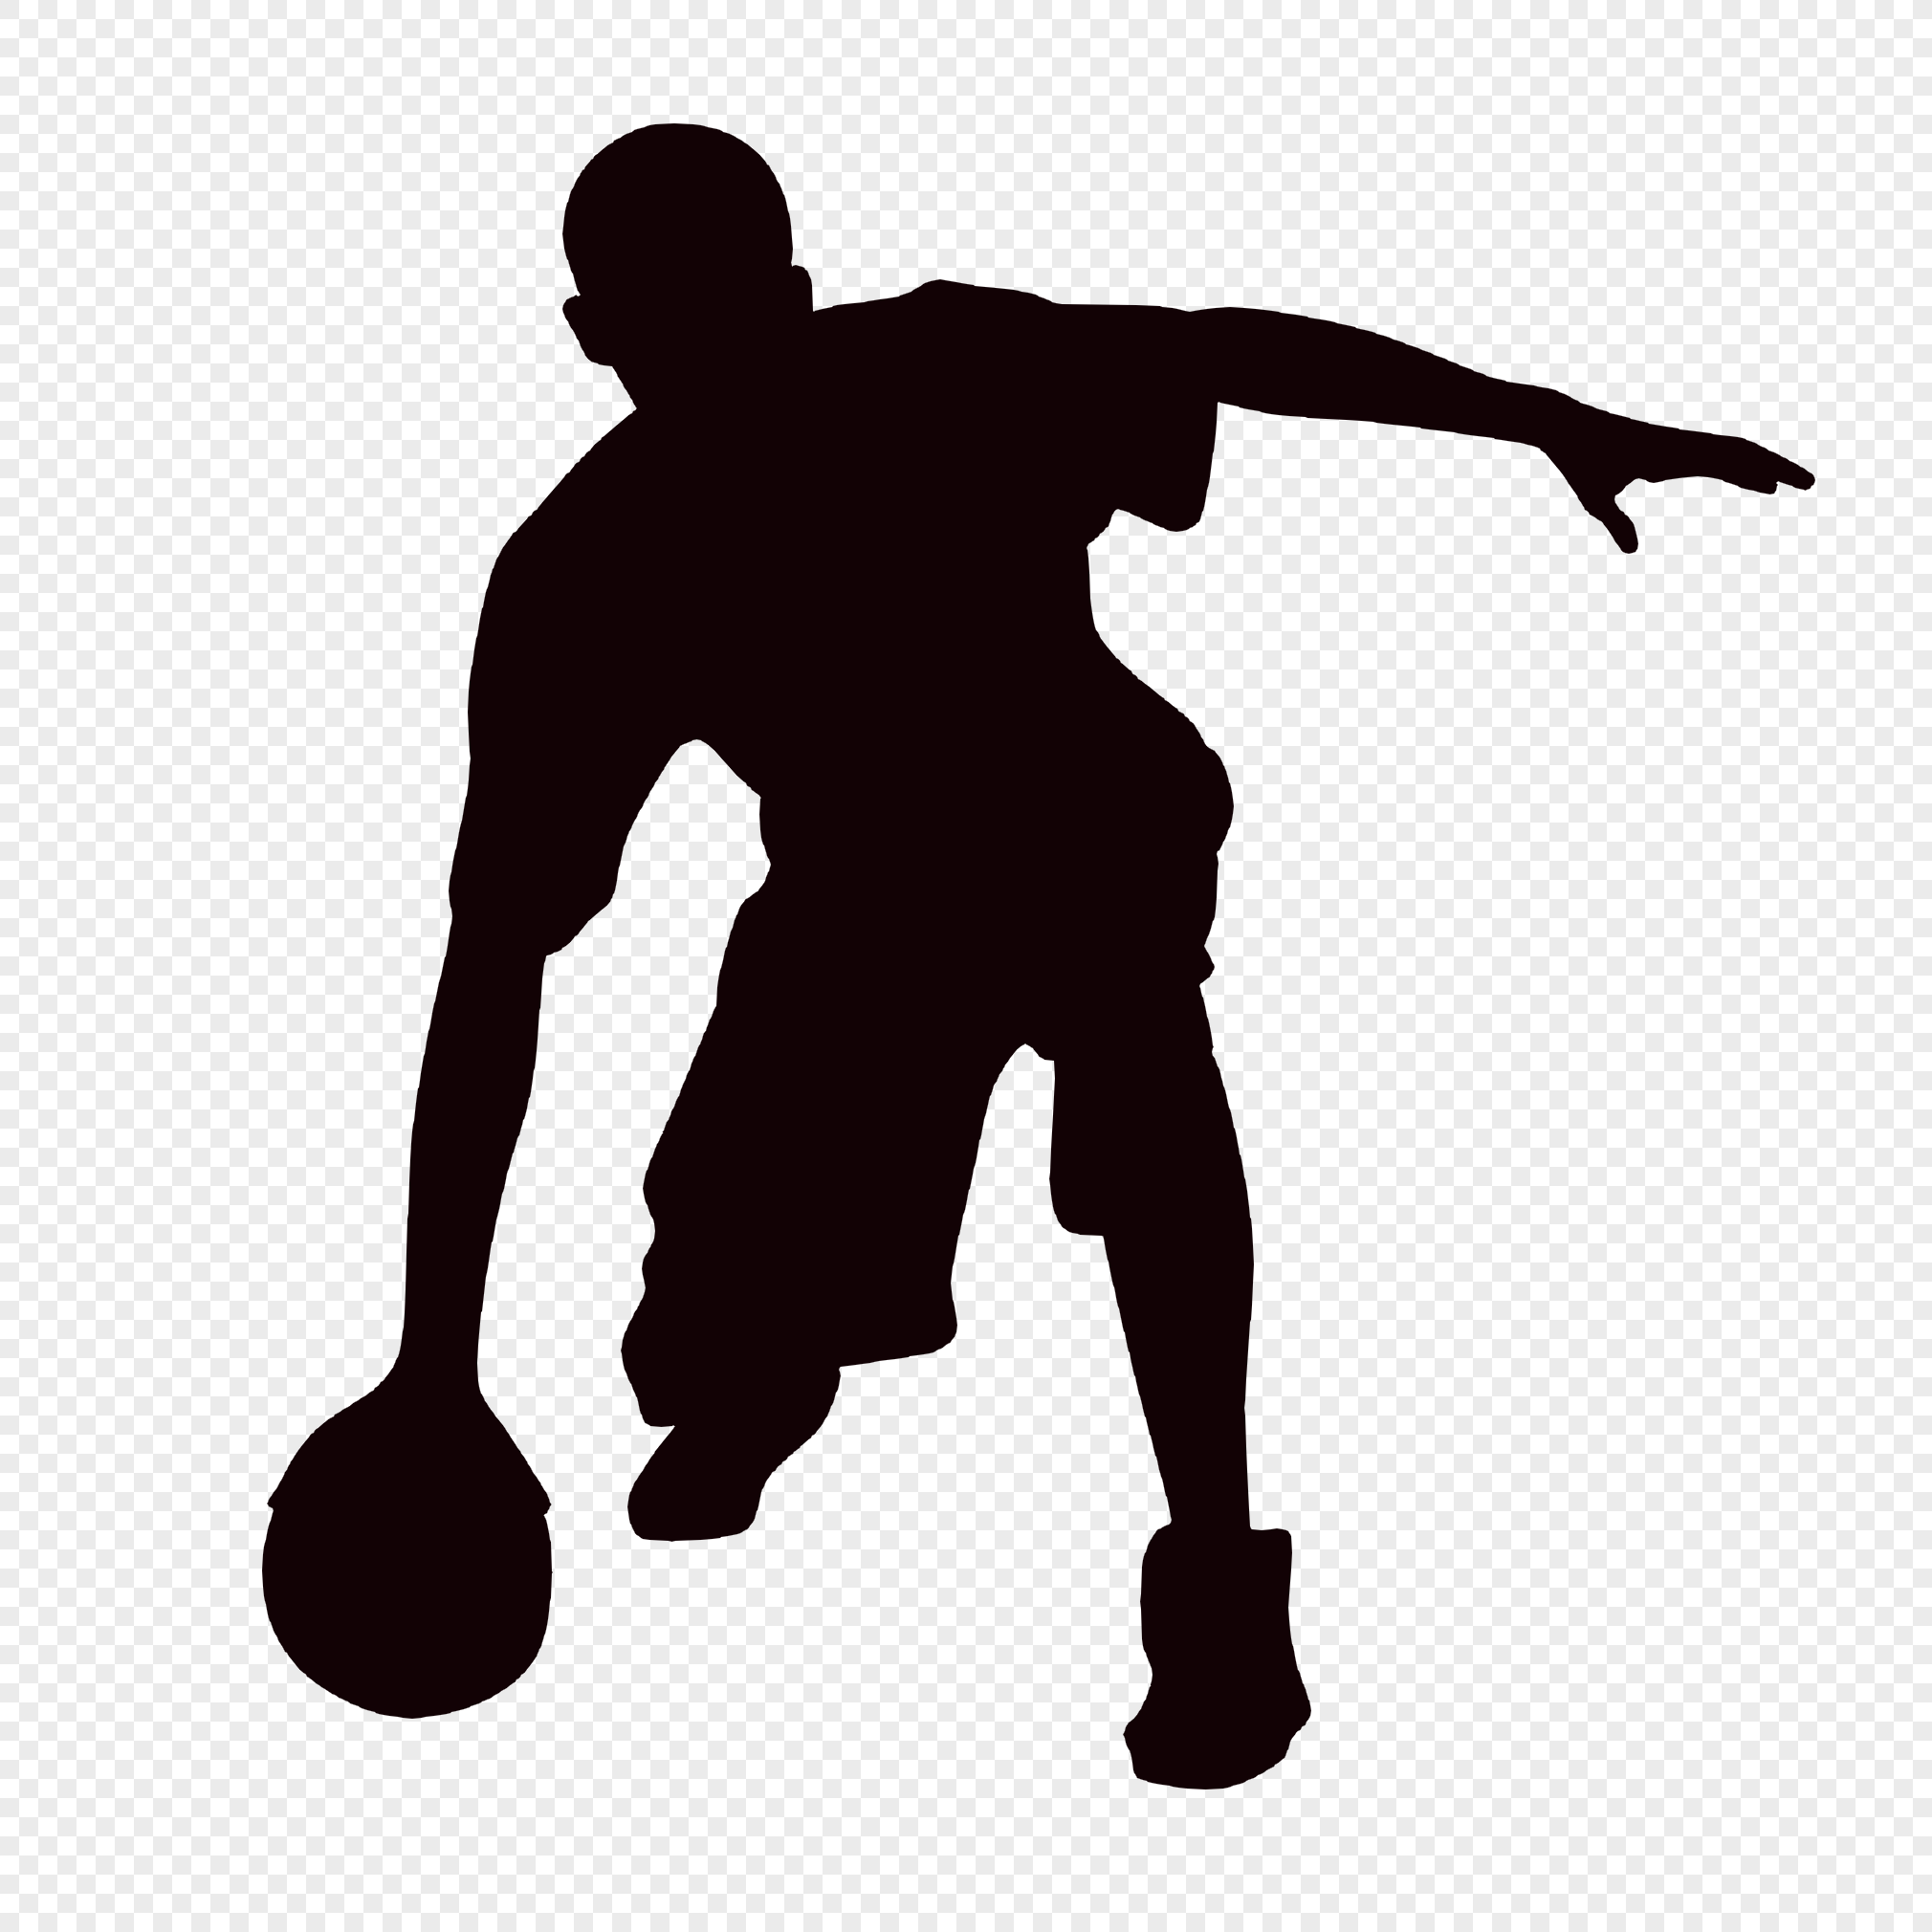 Boy Playing Basketball PNG Image & PSD File Free Download - Lovepik ...